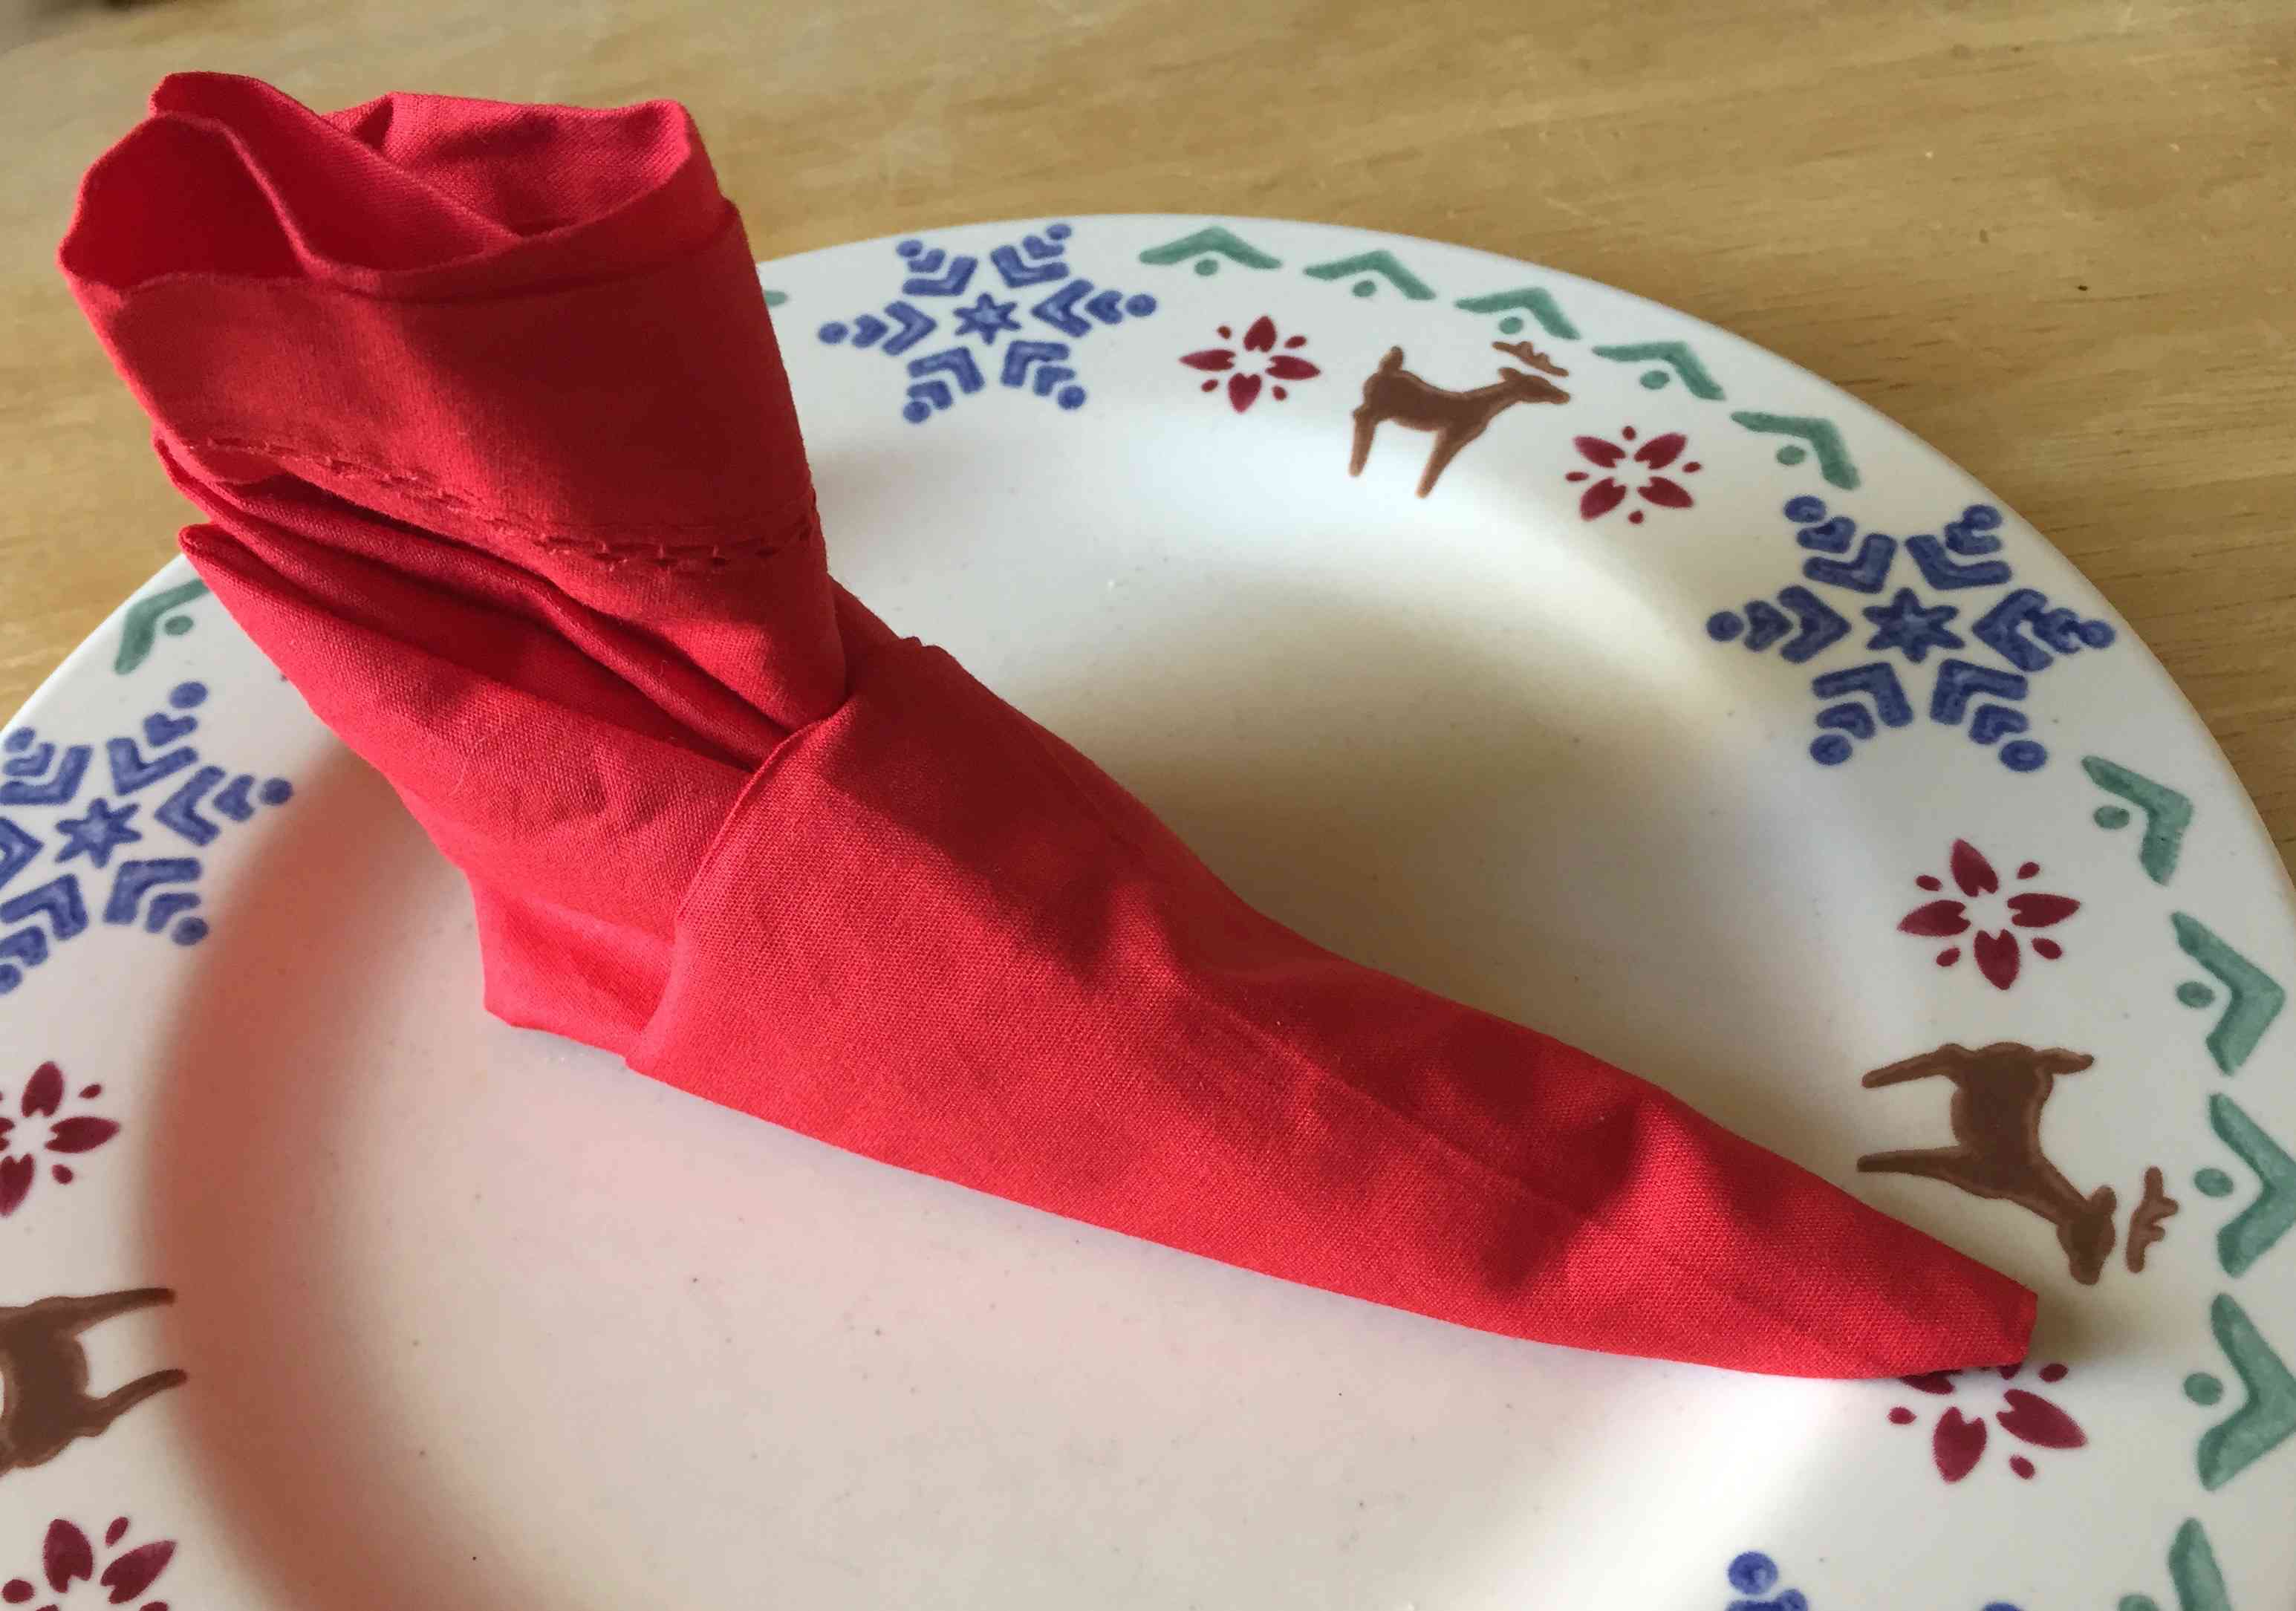 红色的餐巾折叠成驯鹿板上的小精灵靴子形状